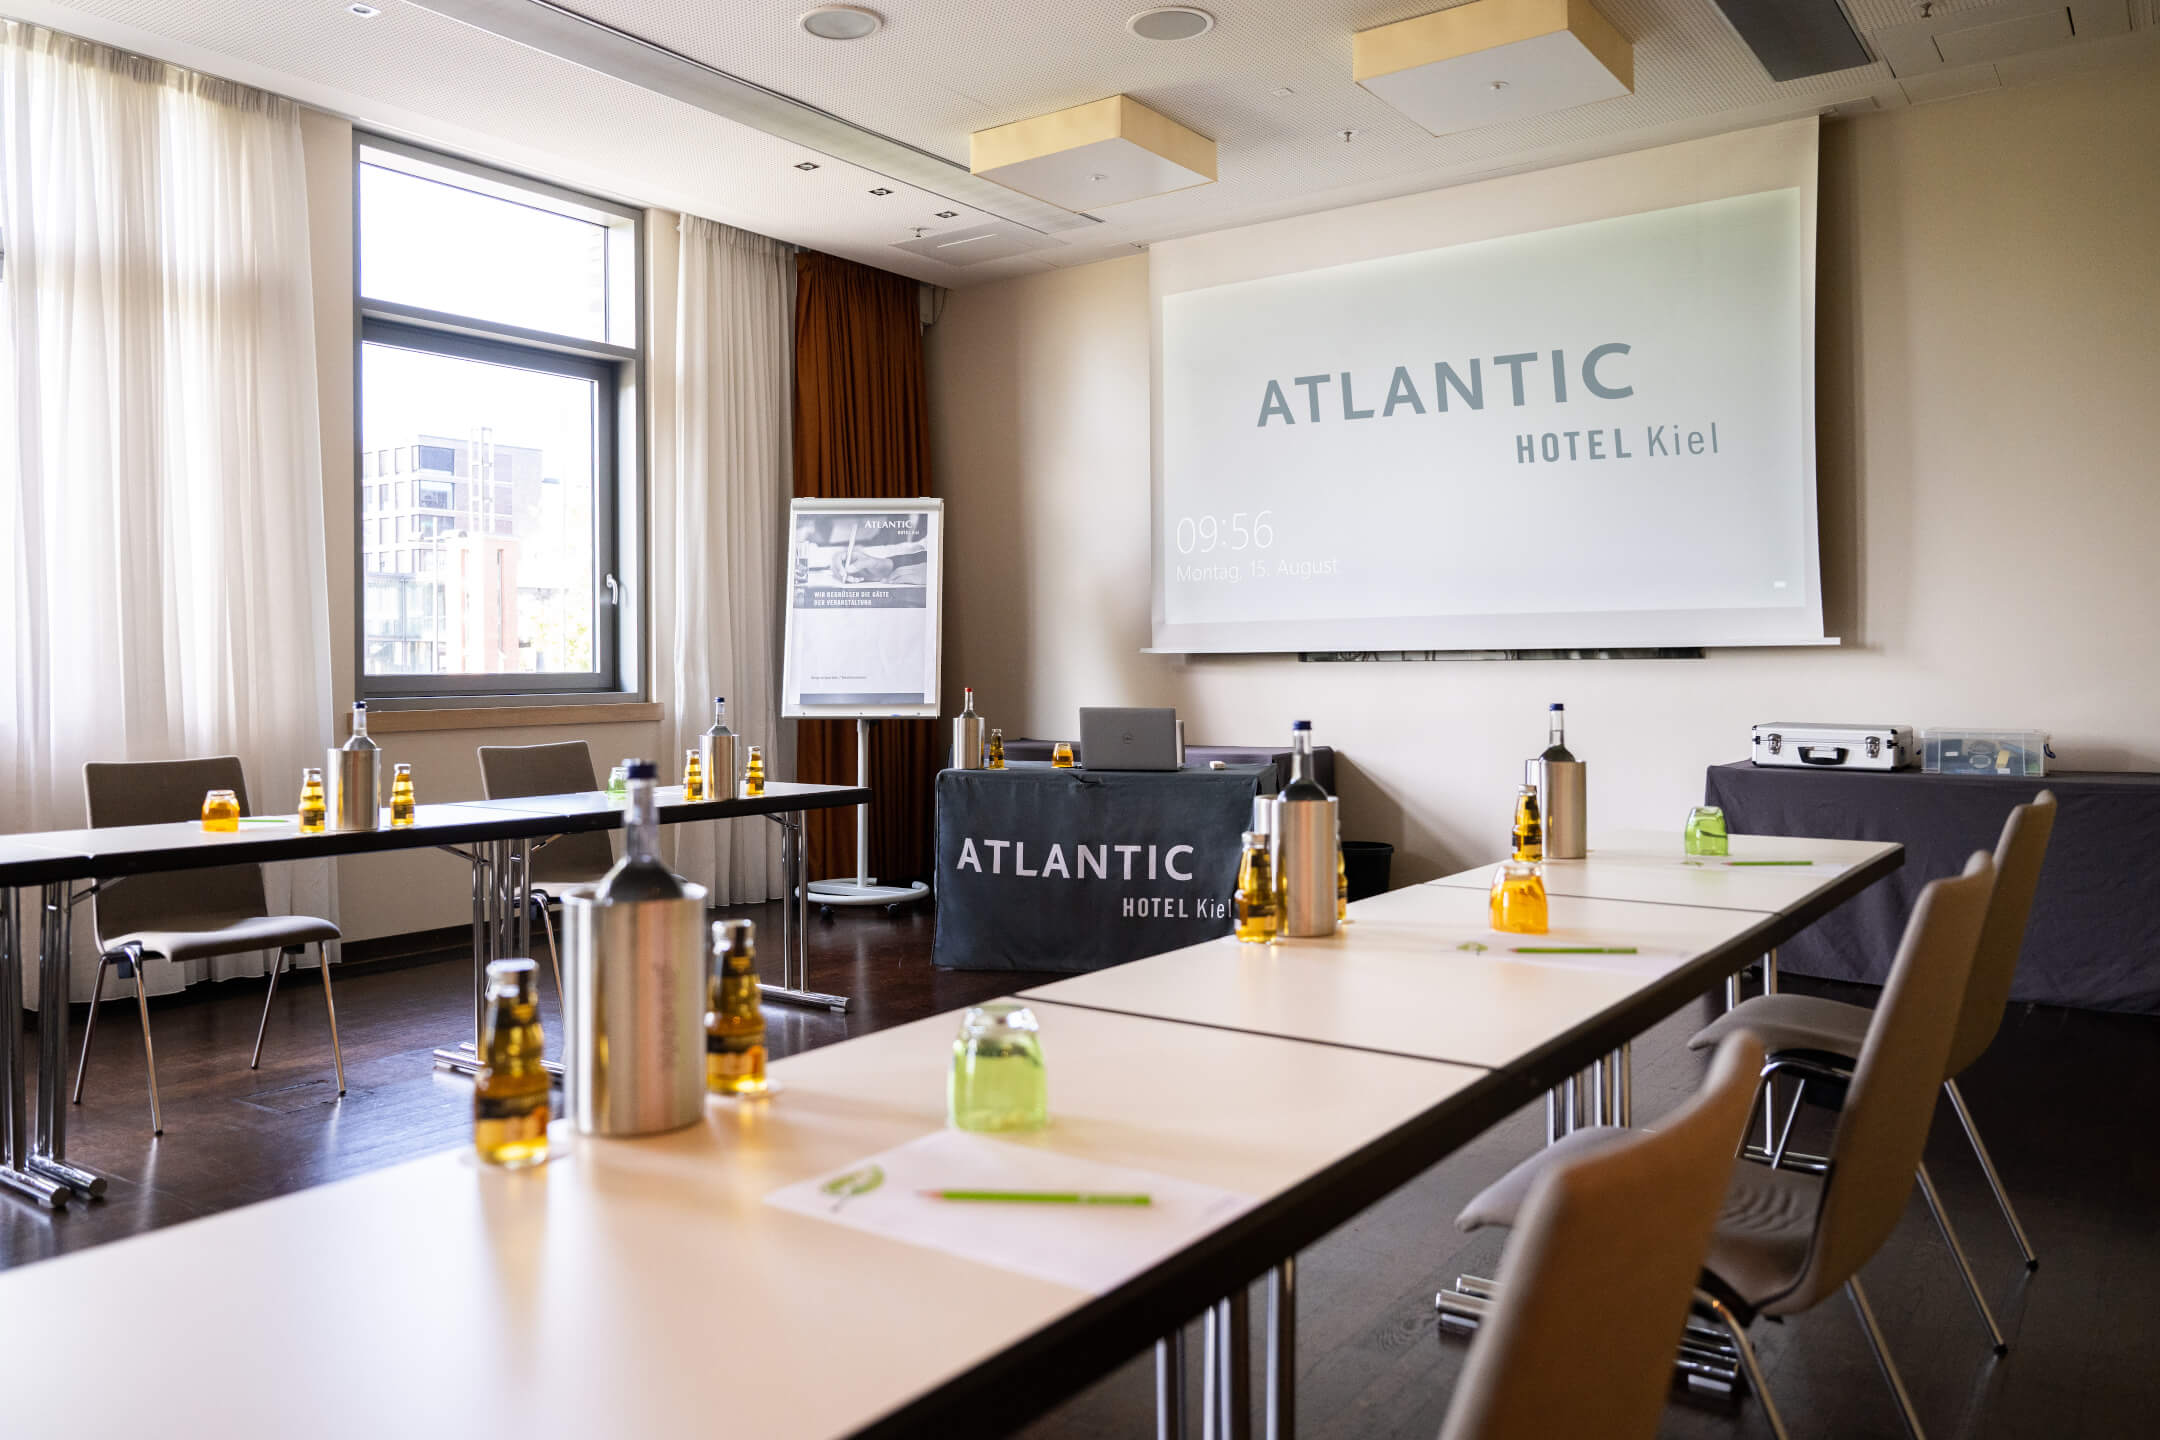  Meetings at the ATLANTIC Hotel Kiel